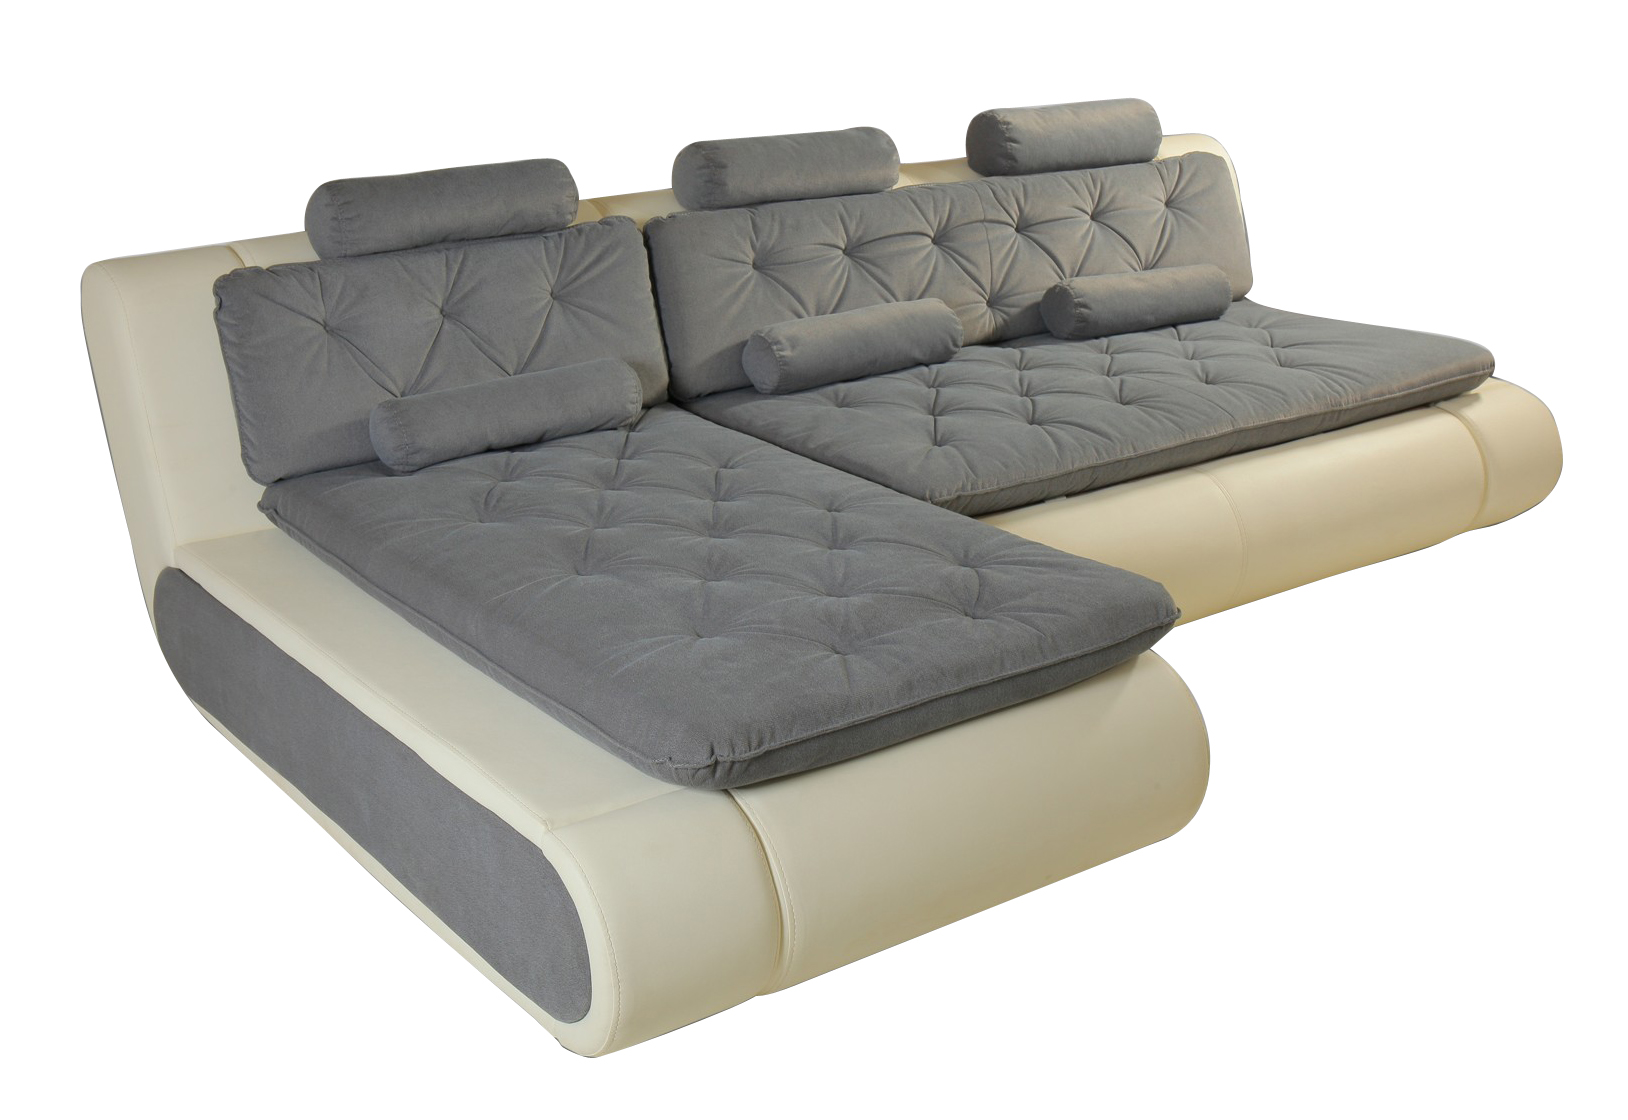 Угловой модульный диван Кормак Алмаз - купи выгодно в интернет-магазине вМоскве